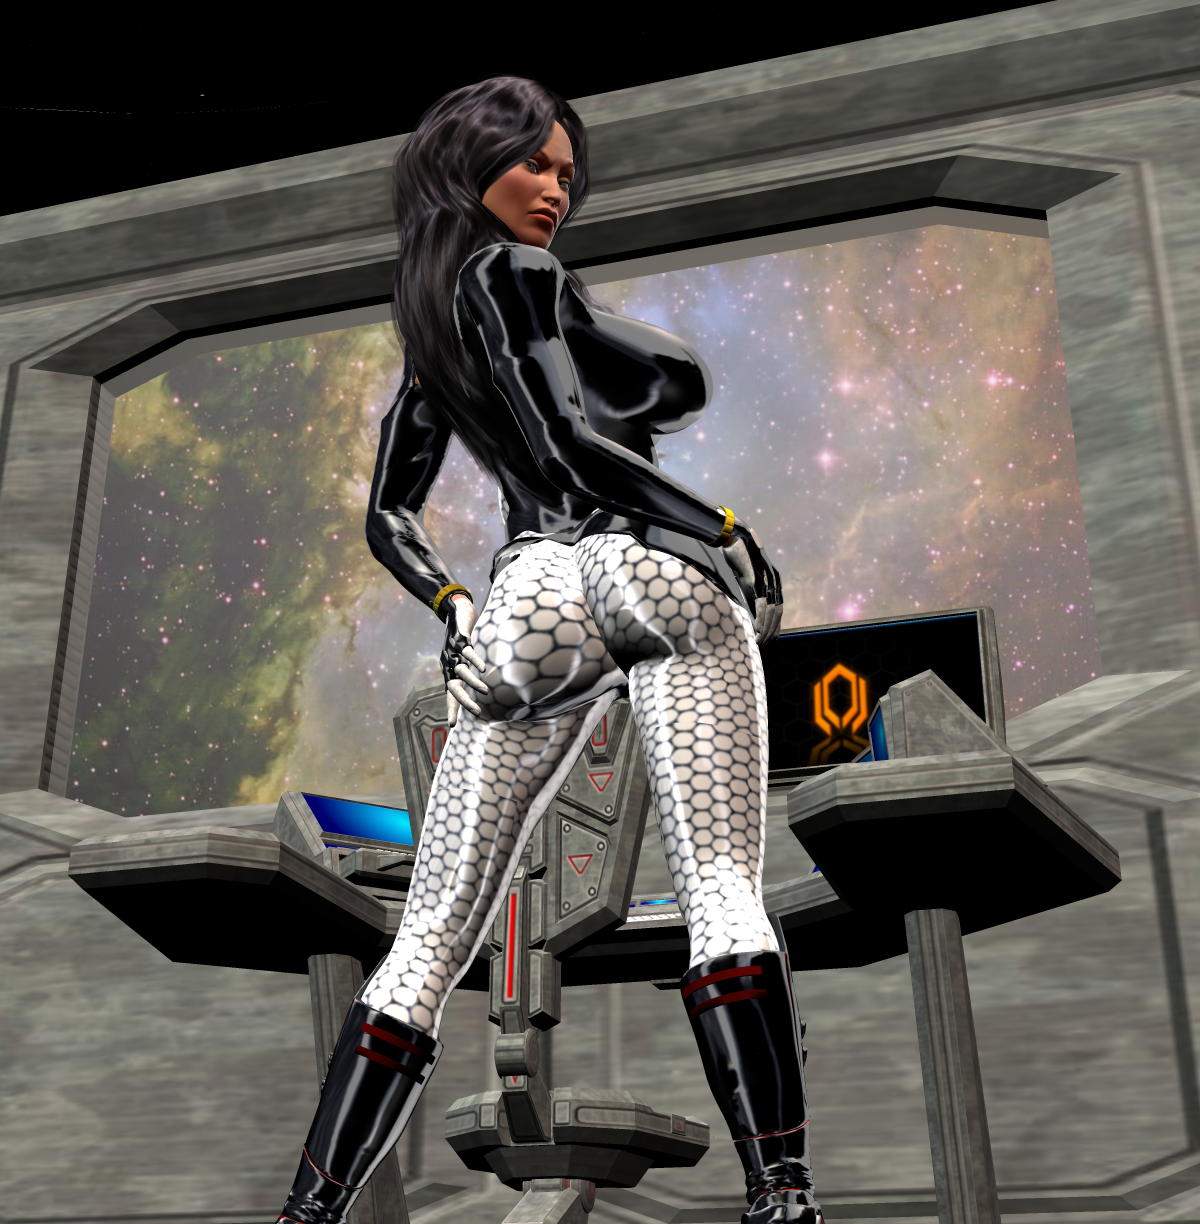 Mass_Effect__Miranda_Lawson_by_Chup_at_Cabra.png